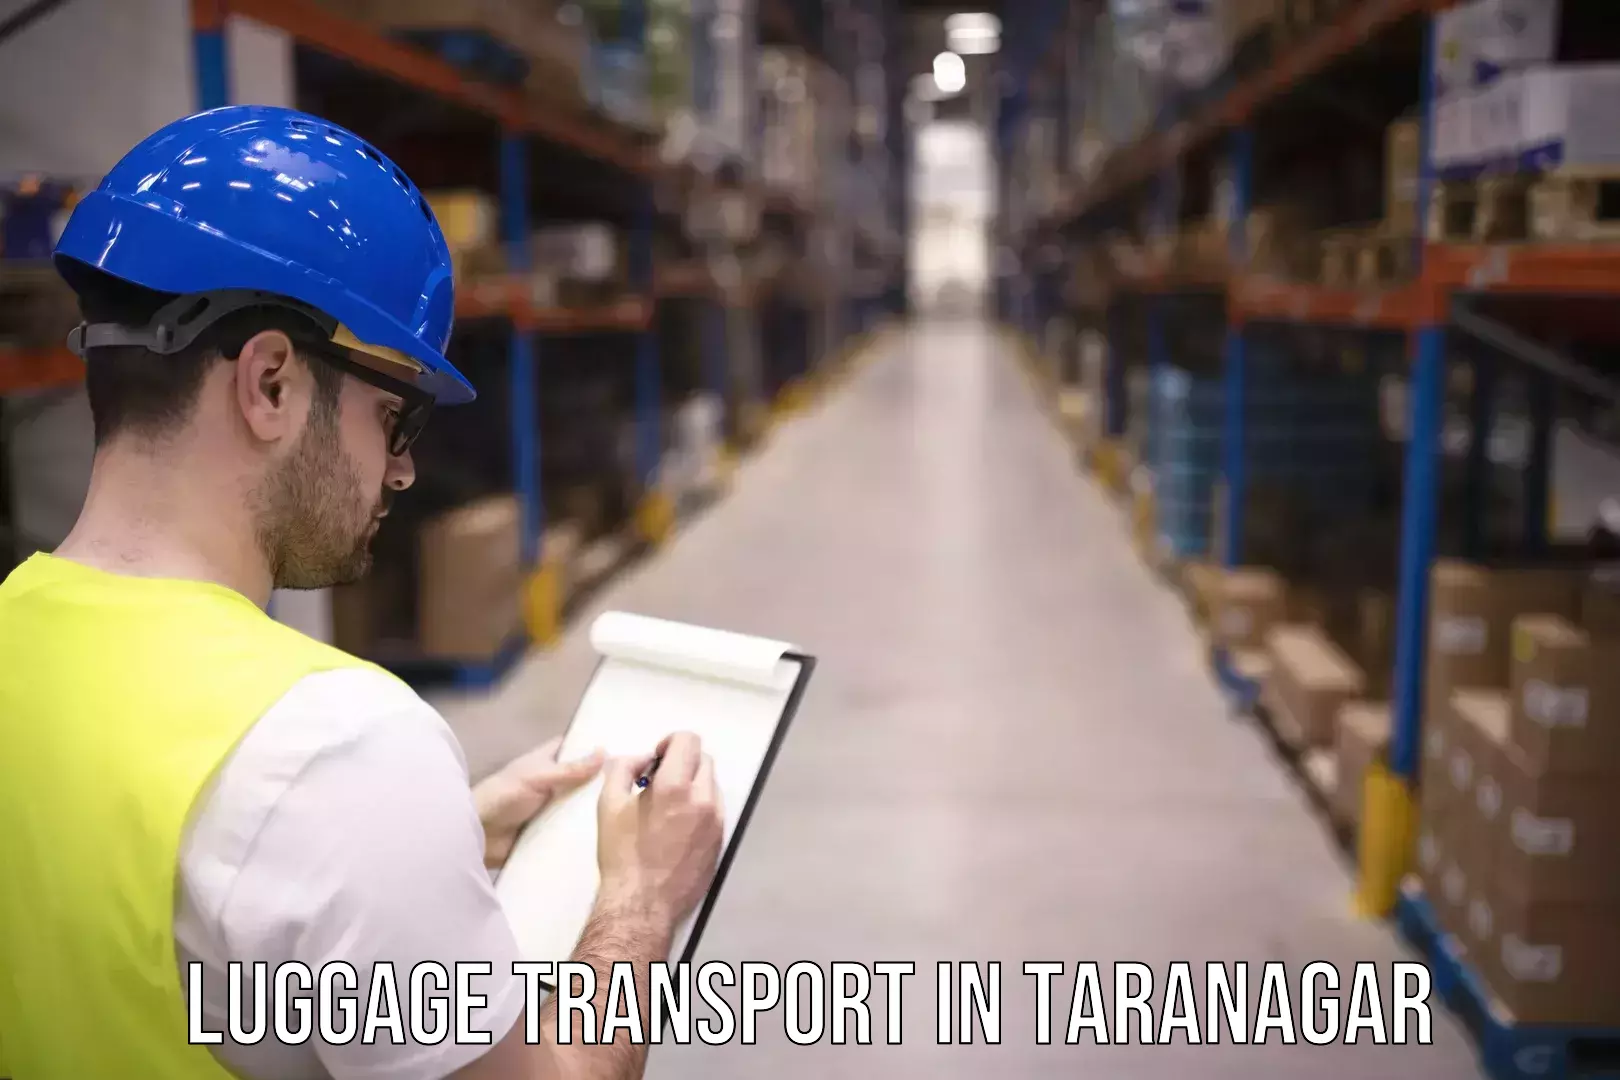 Baggage transport logistics in Taranagar